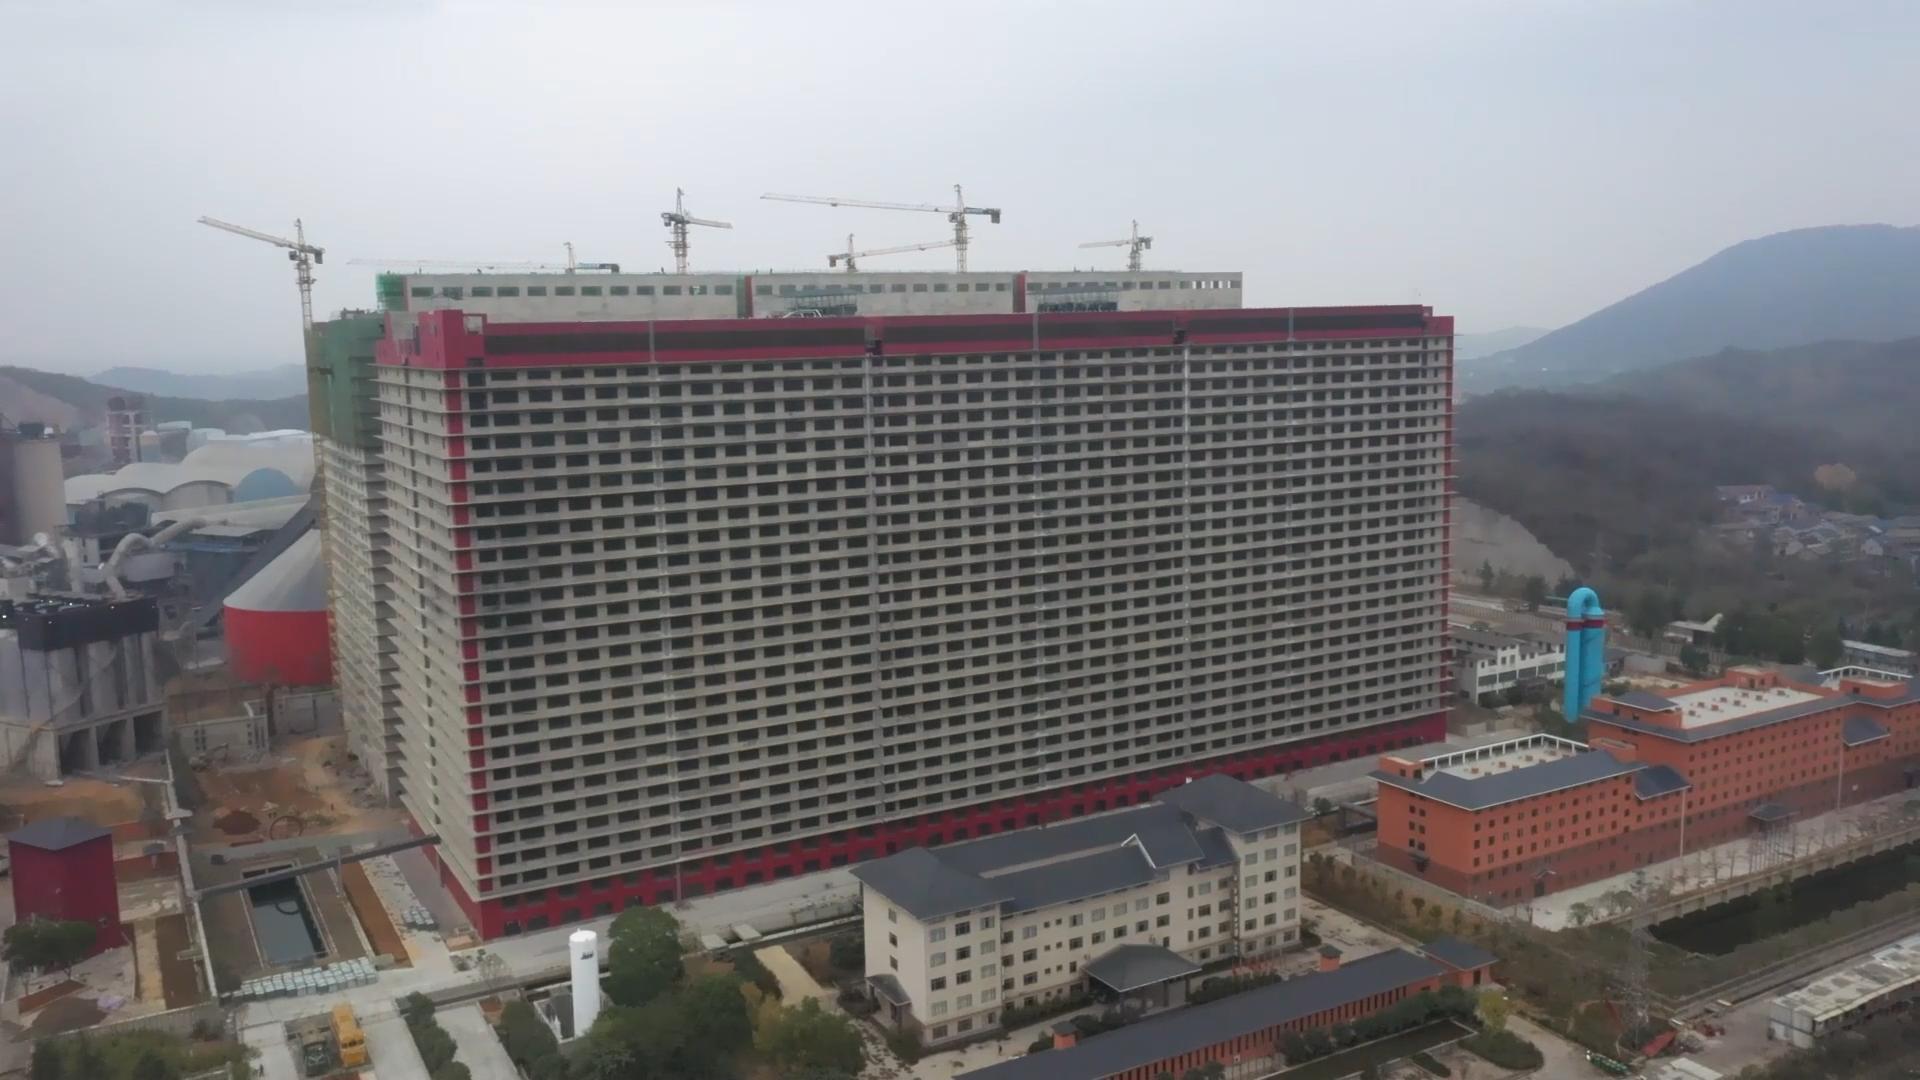 จีนใช้ตึกสูง 26 ชั้น สร้าง 'ฟาร์มหมู' ผลผลิตเกินครึ่งล้านต่อปี